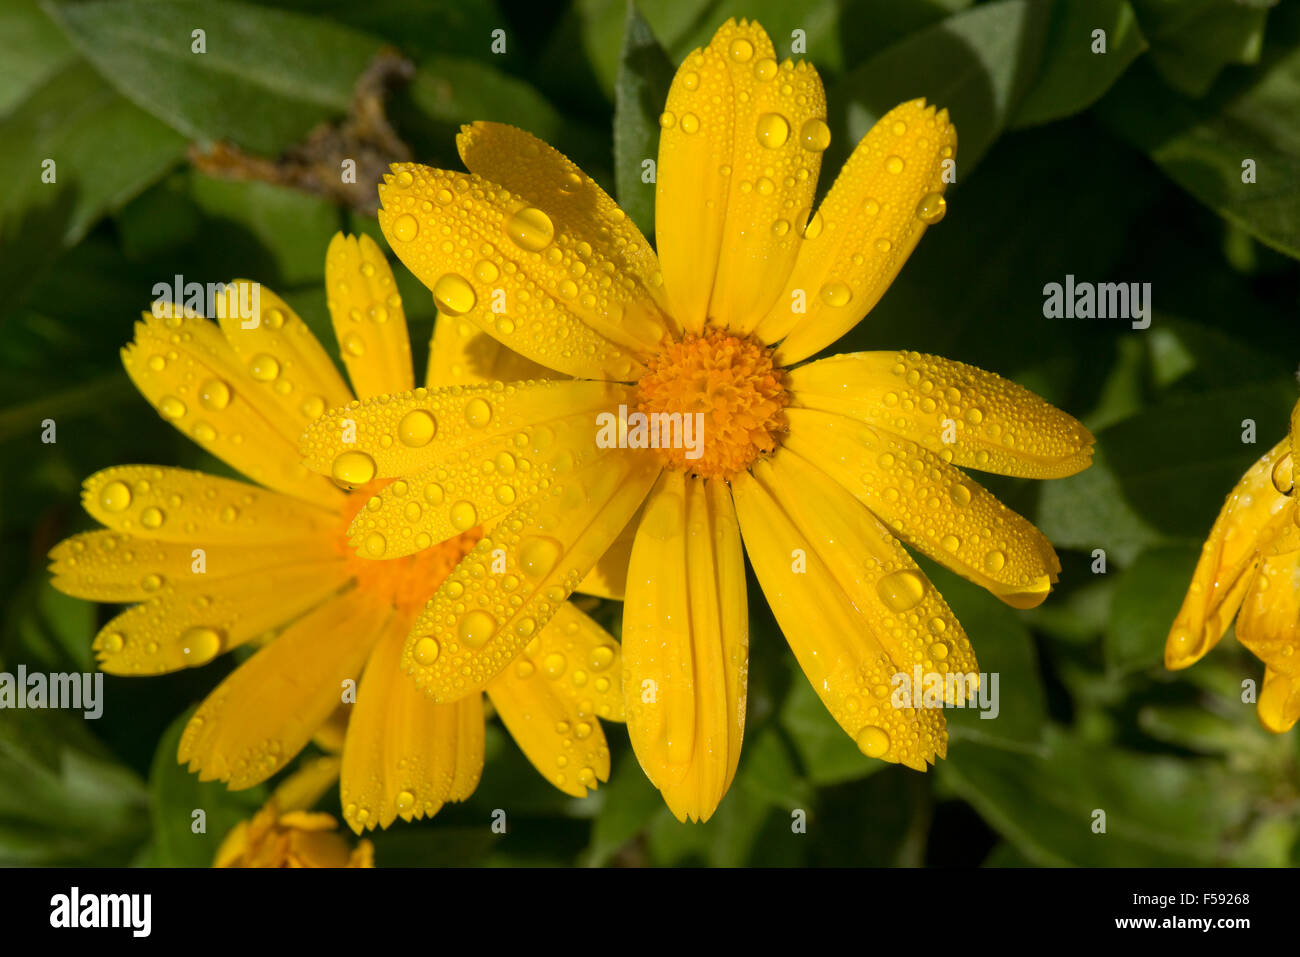 Les gouttelettes d'eau de pluie sur un carton jaune souci, Calendula officinalis, fleur, Berkshire, octobre Banque D'Images